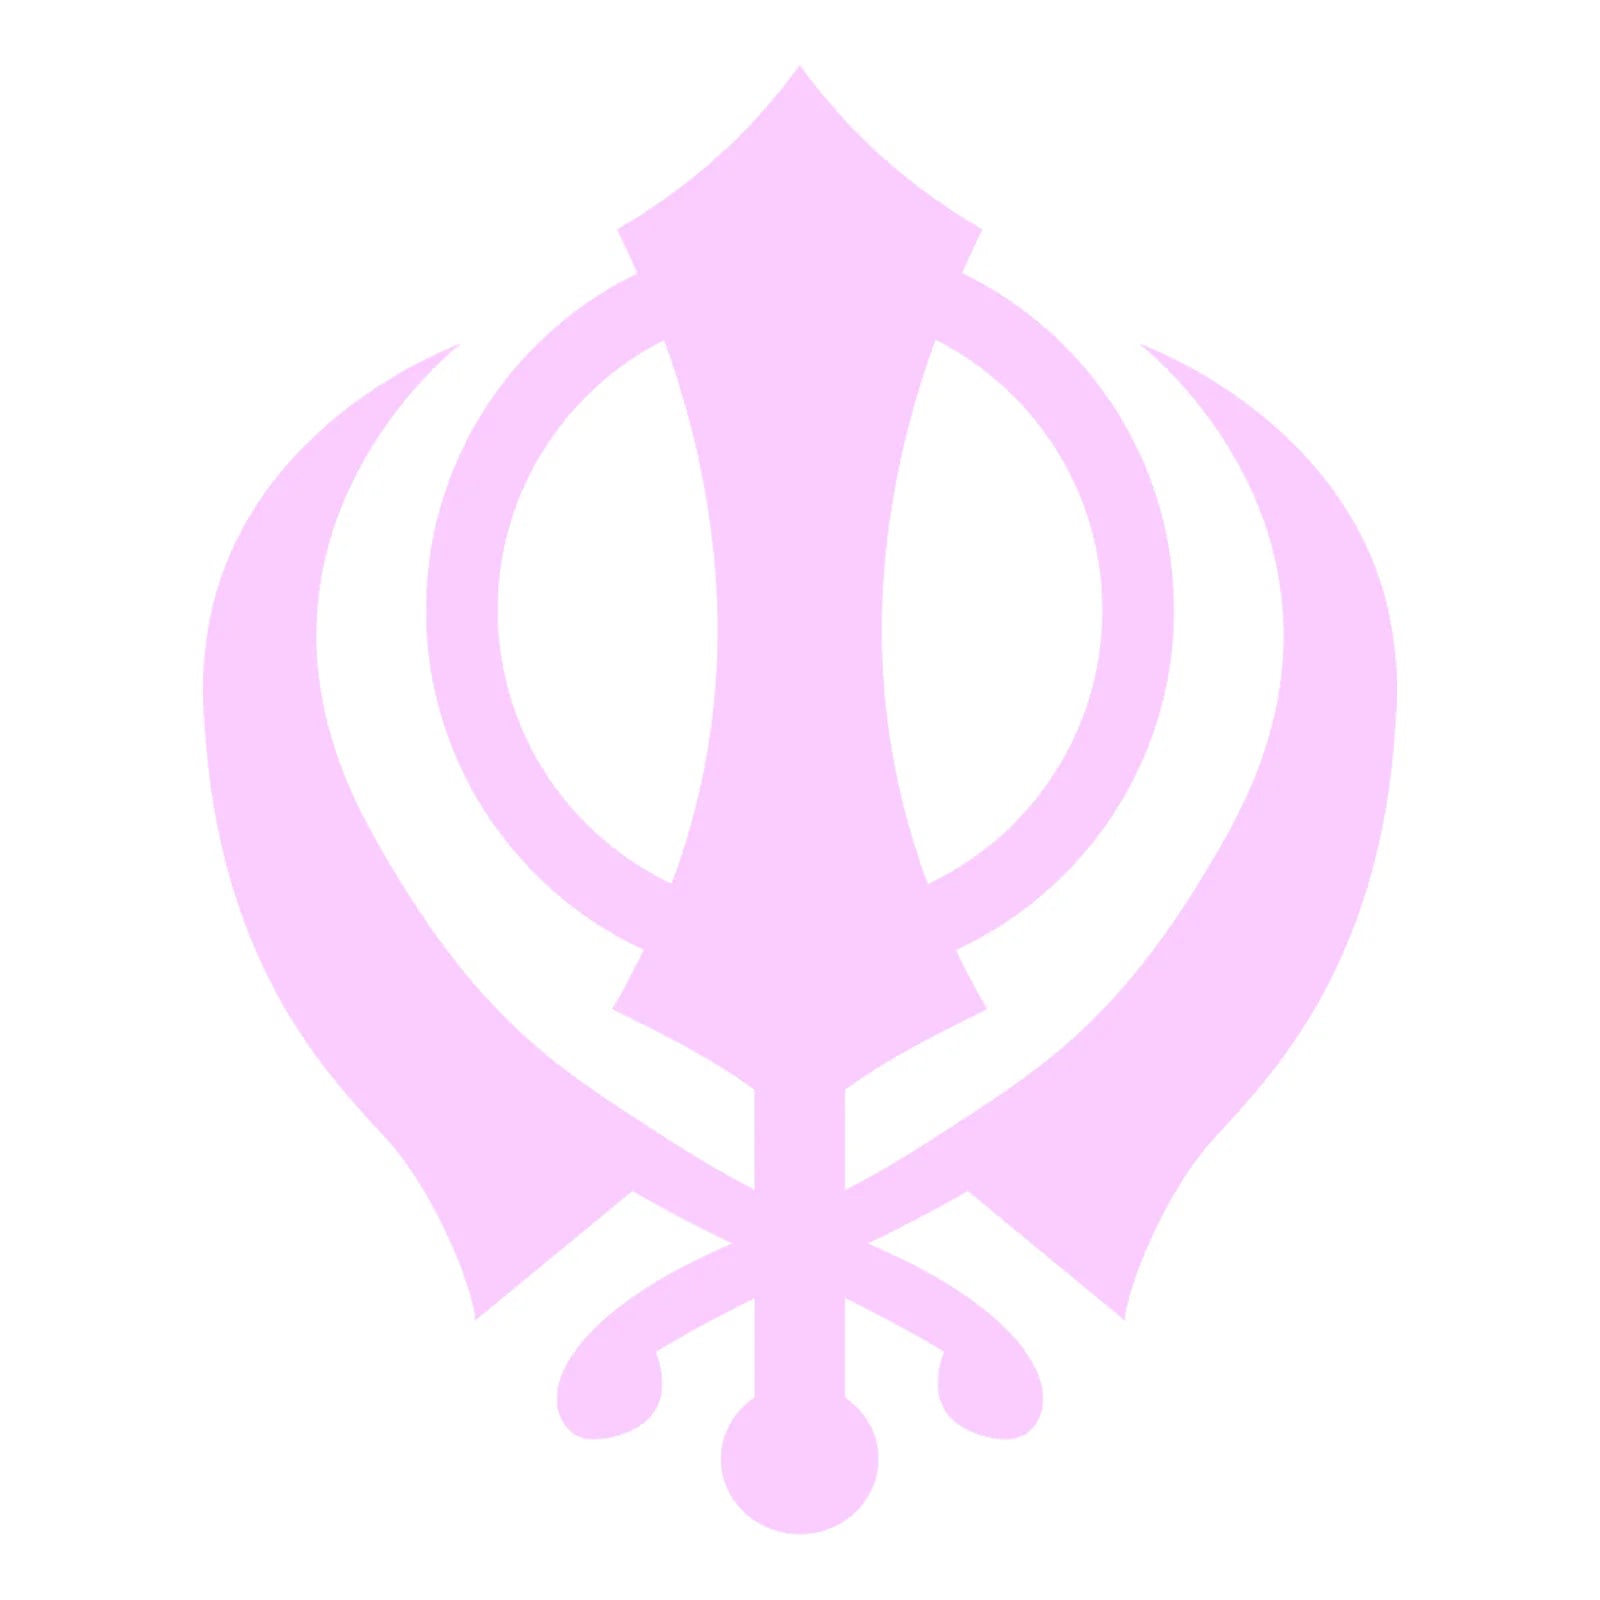 Sikh Khanda Window Sticker in Pink